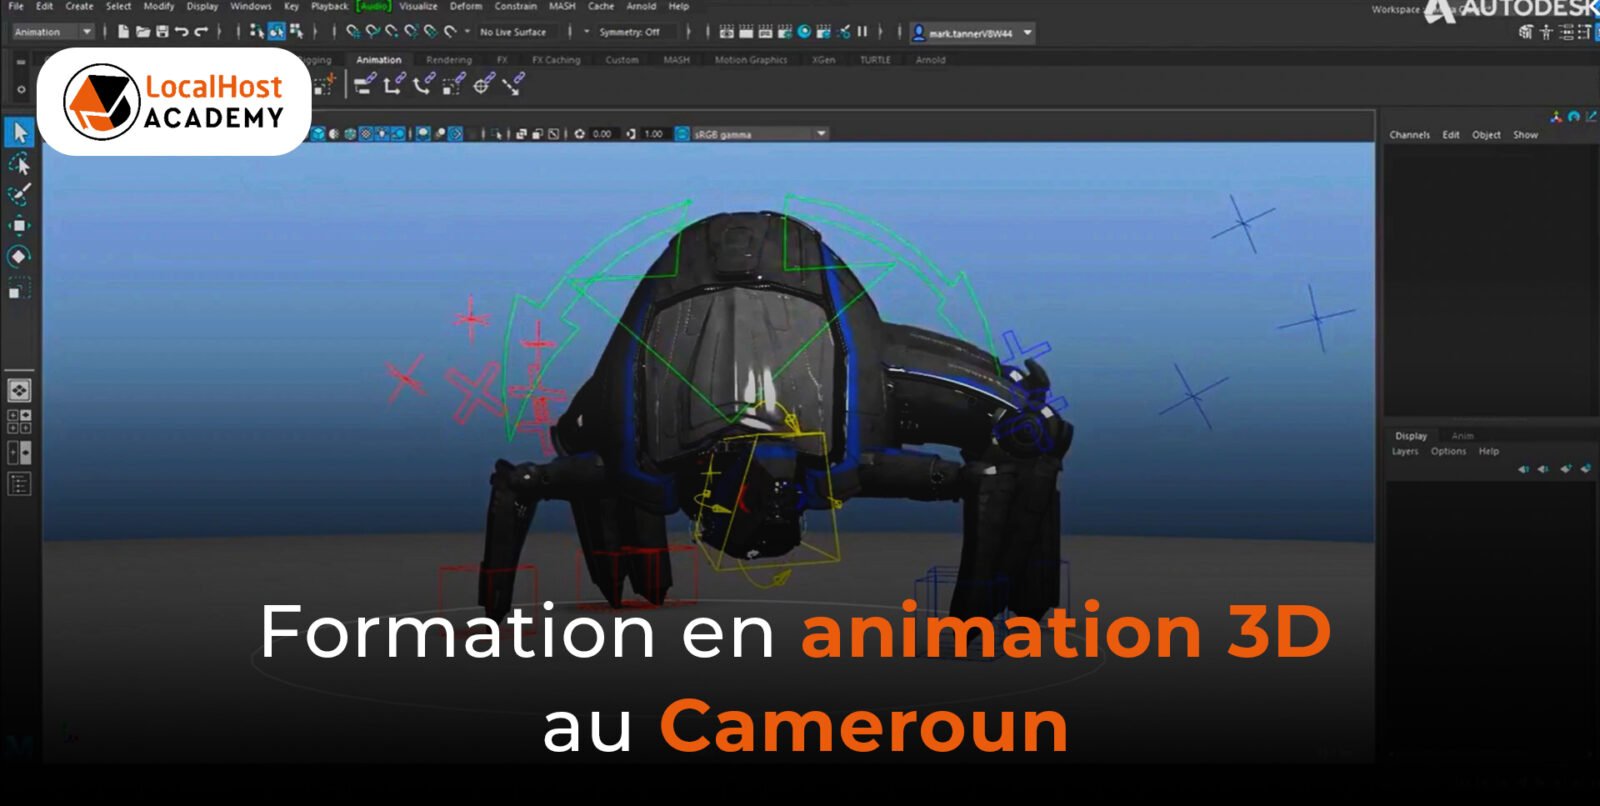 Formation en animation 3D au Cameroun